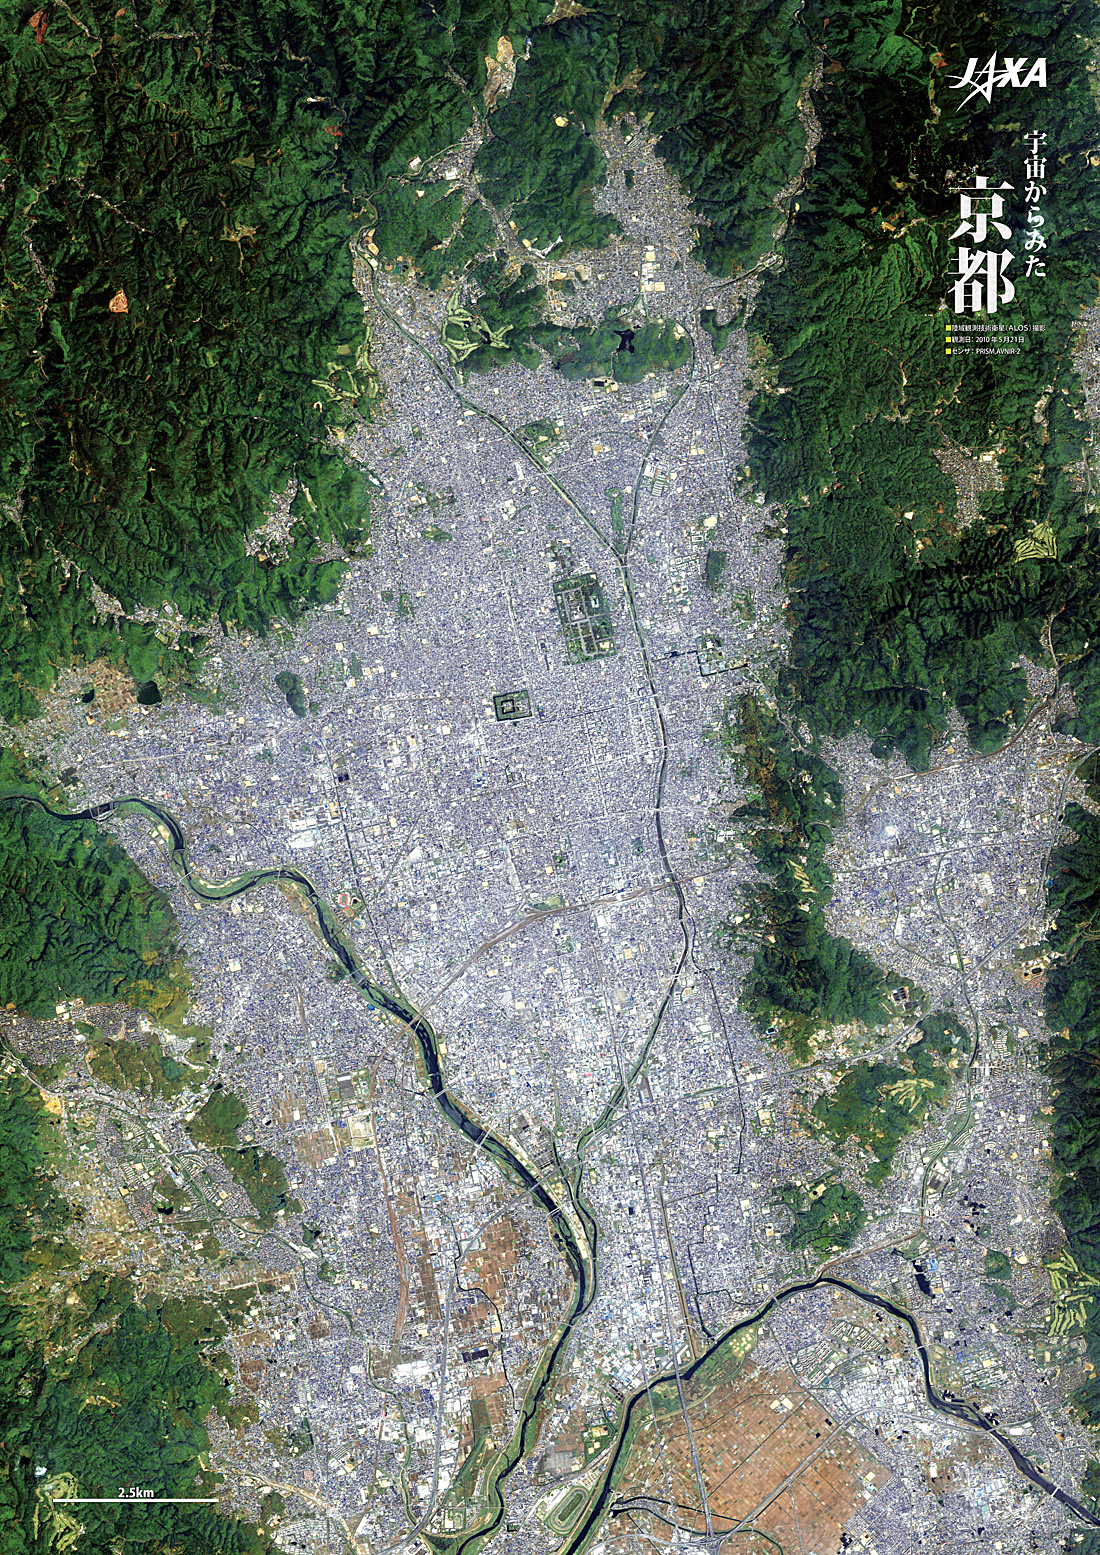 だいちから見た日本の都市 京都:衛星画像（ポスター仕上げ）